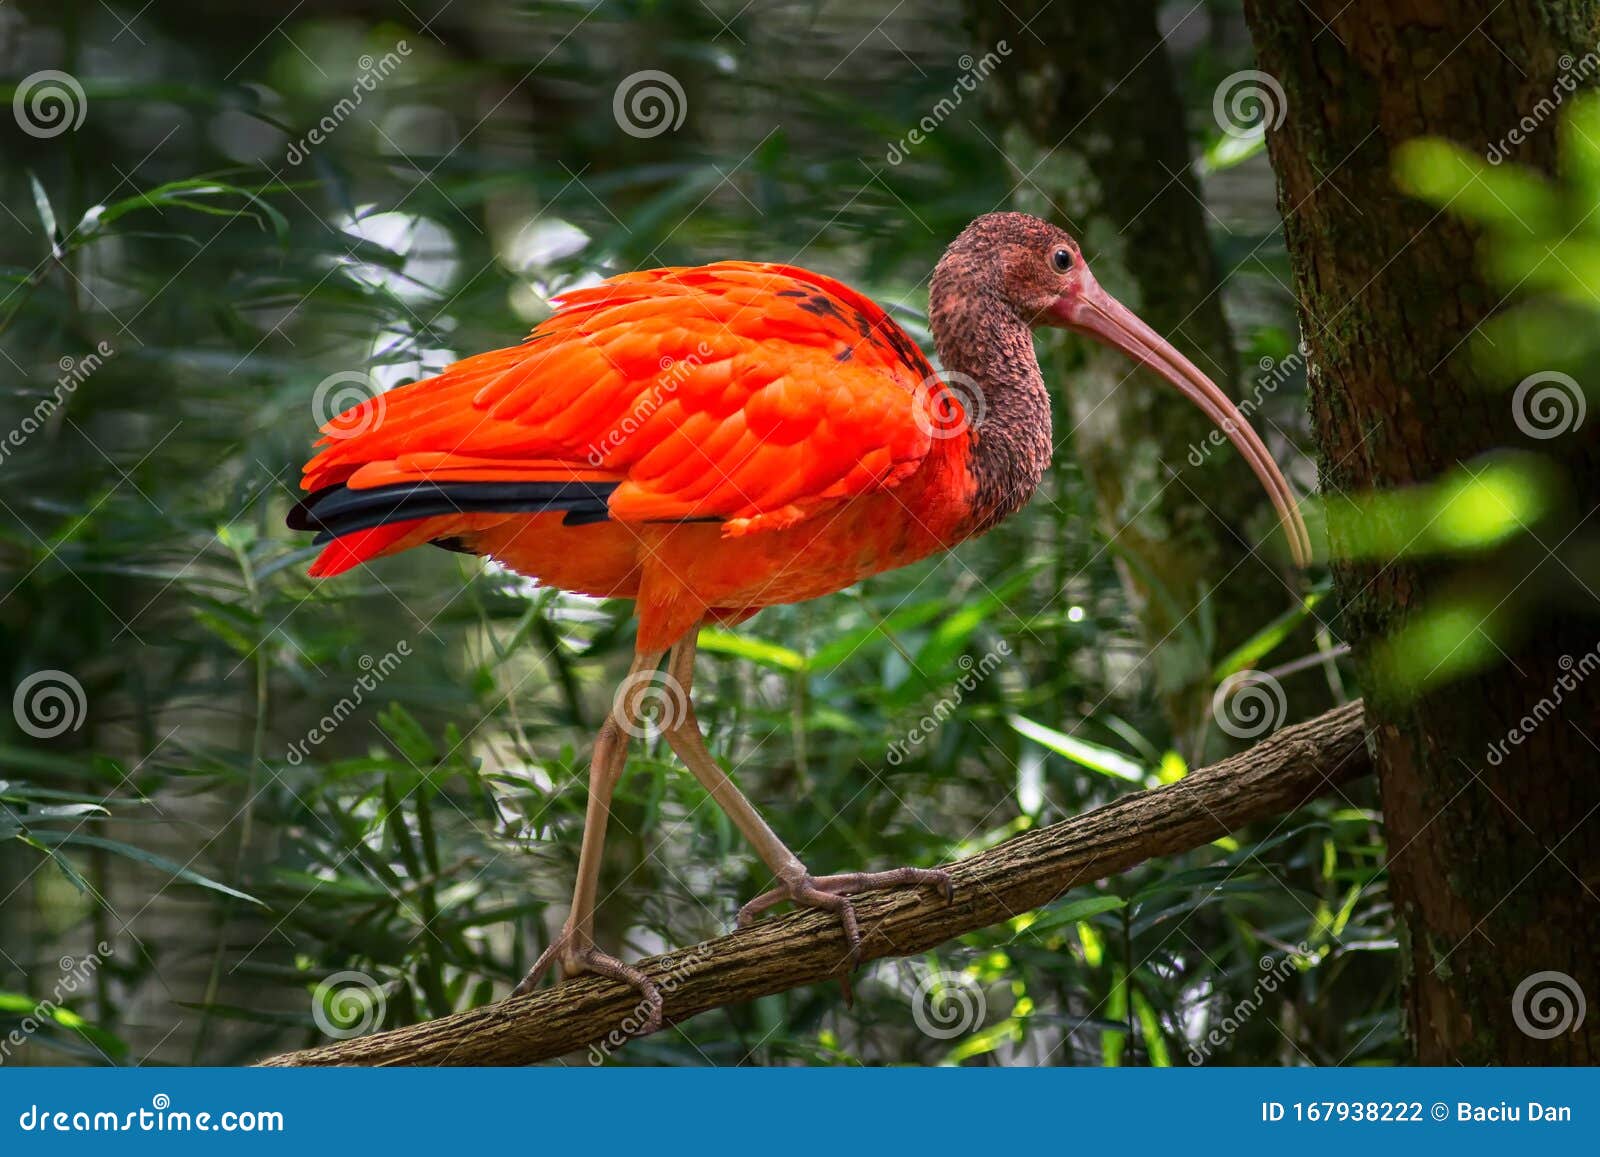 wild amazon rainforest bird scarlet ibis, eudocimus ruber, wild tropical bird of brazil  in the forest in parque das aves